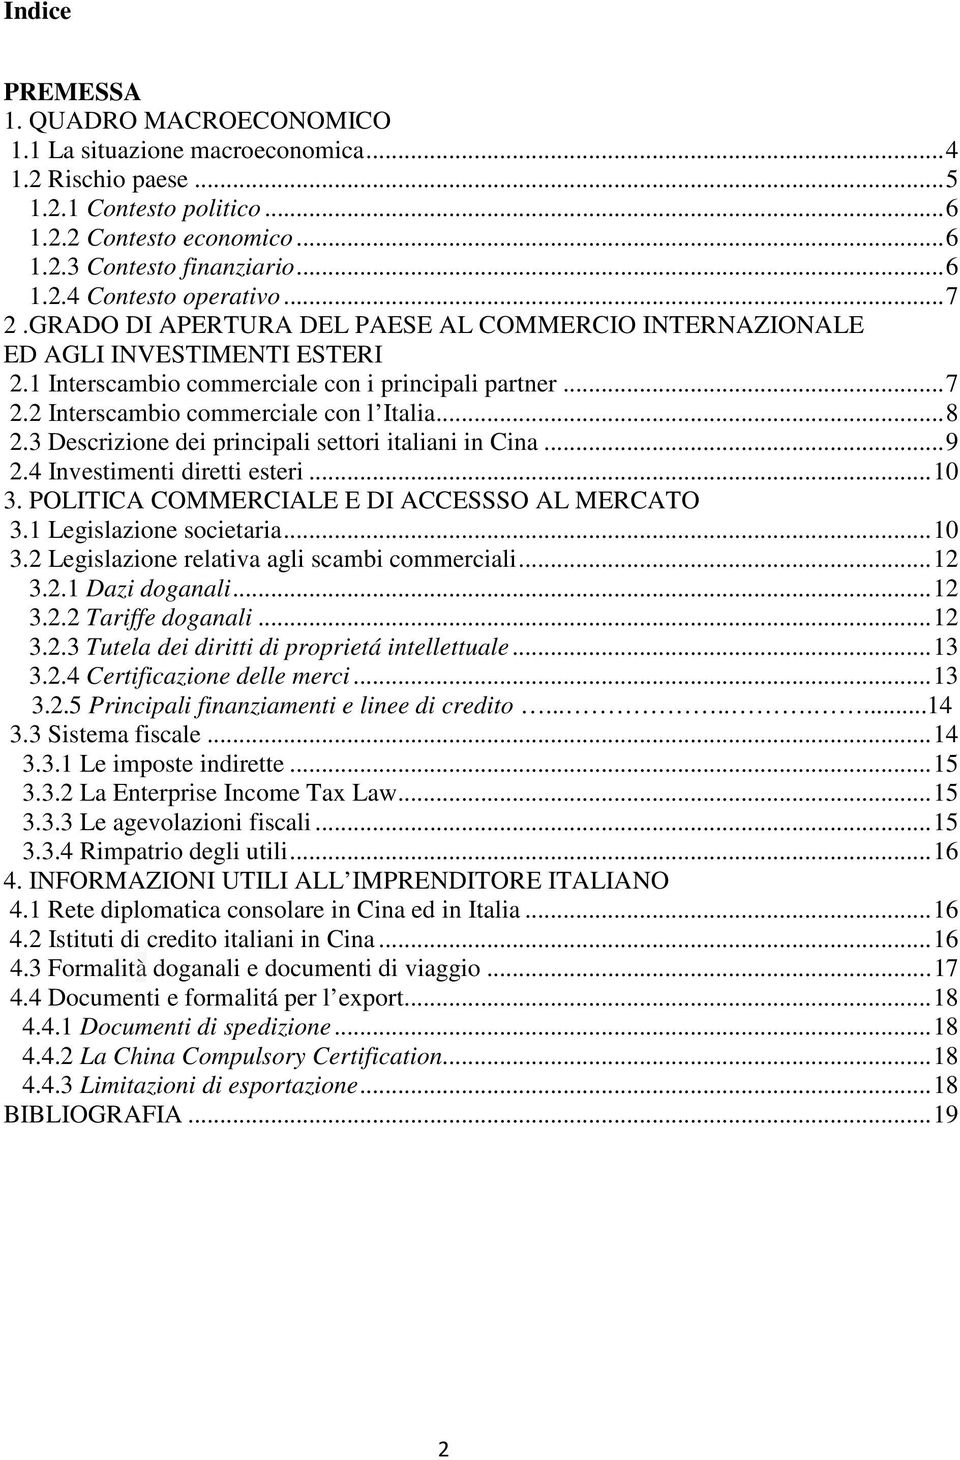 3 Descrizione dei principali settori italiani in Cina... 9 2.4 Investimenti diretti esteri... 10 3. POLITICA COMMERCIALE E DI ACCESSSO AL MERCATO 3.1 Legislazione societaria... 10 3.2 Legislazione relativa agli scambi commerciali.